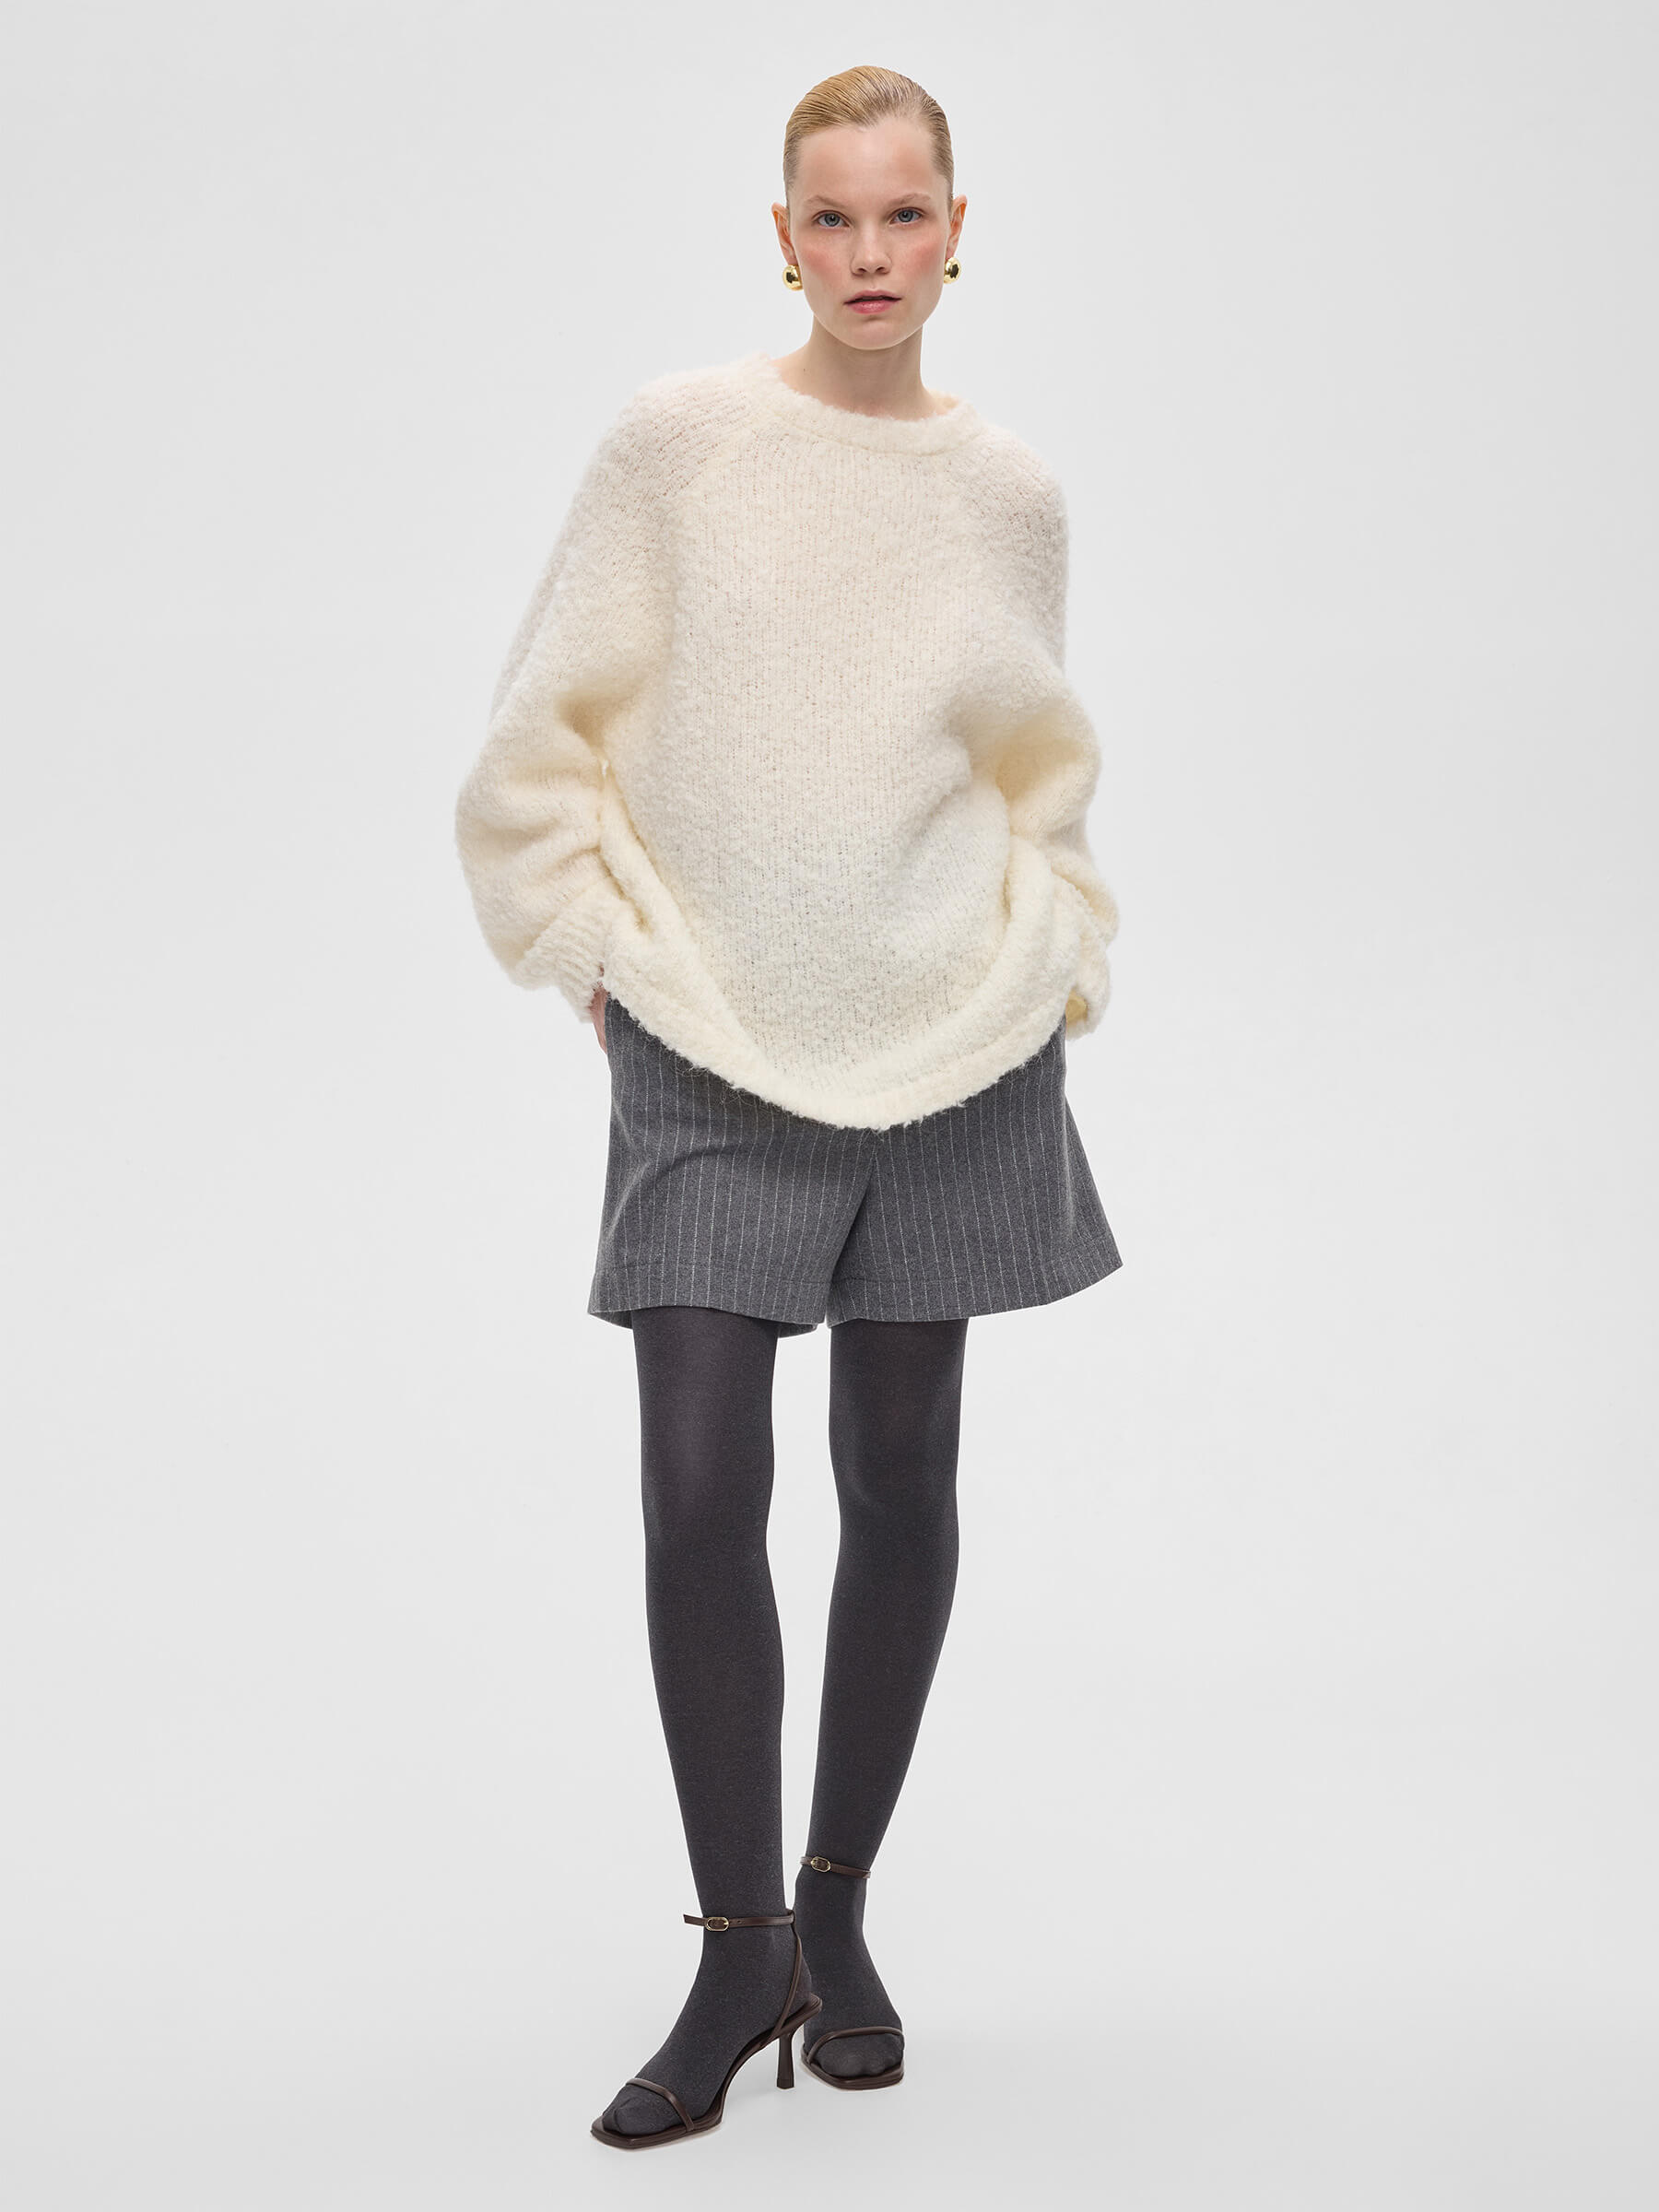 Джемпер удлиненный букле из альпаки и шерсти, молочный юбка макси букле из альпаки и шерсти серый